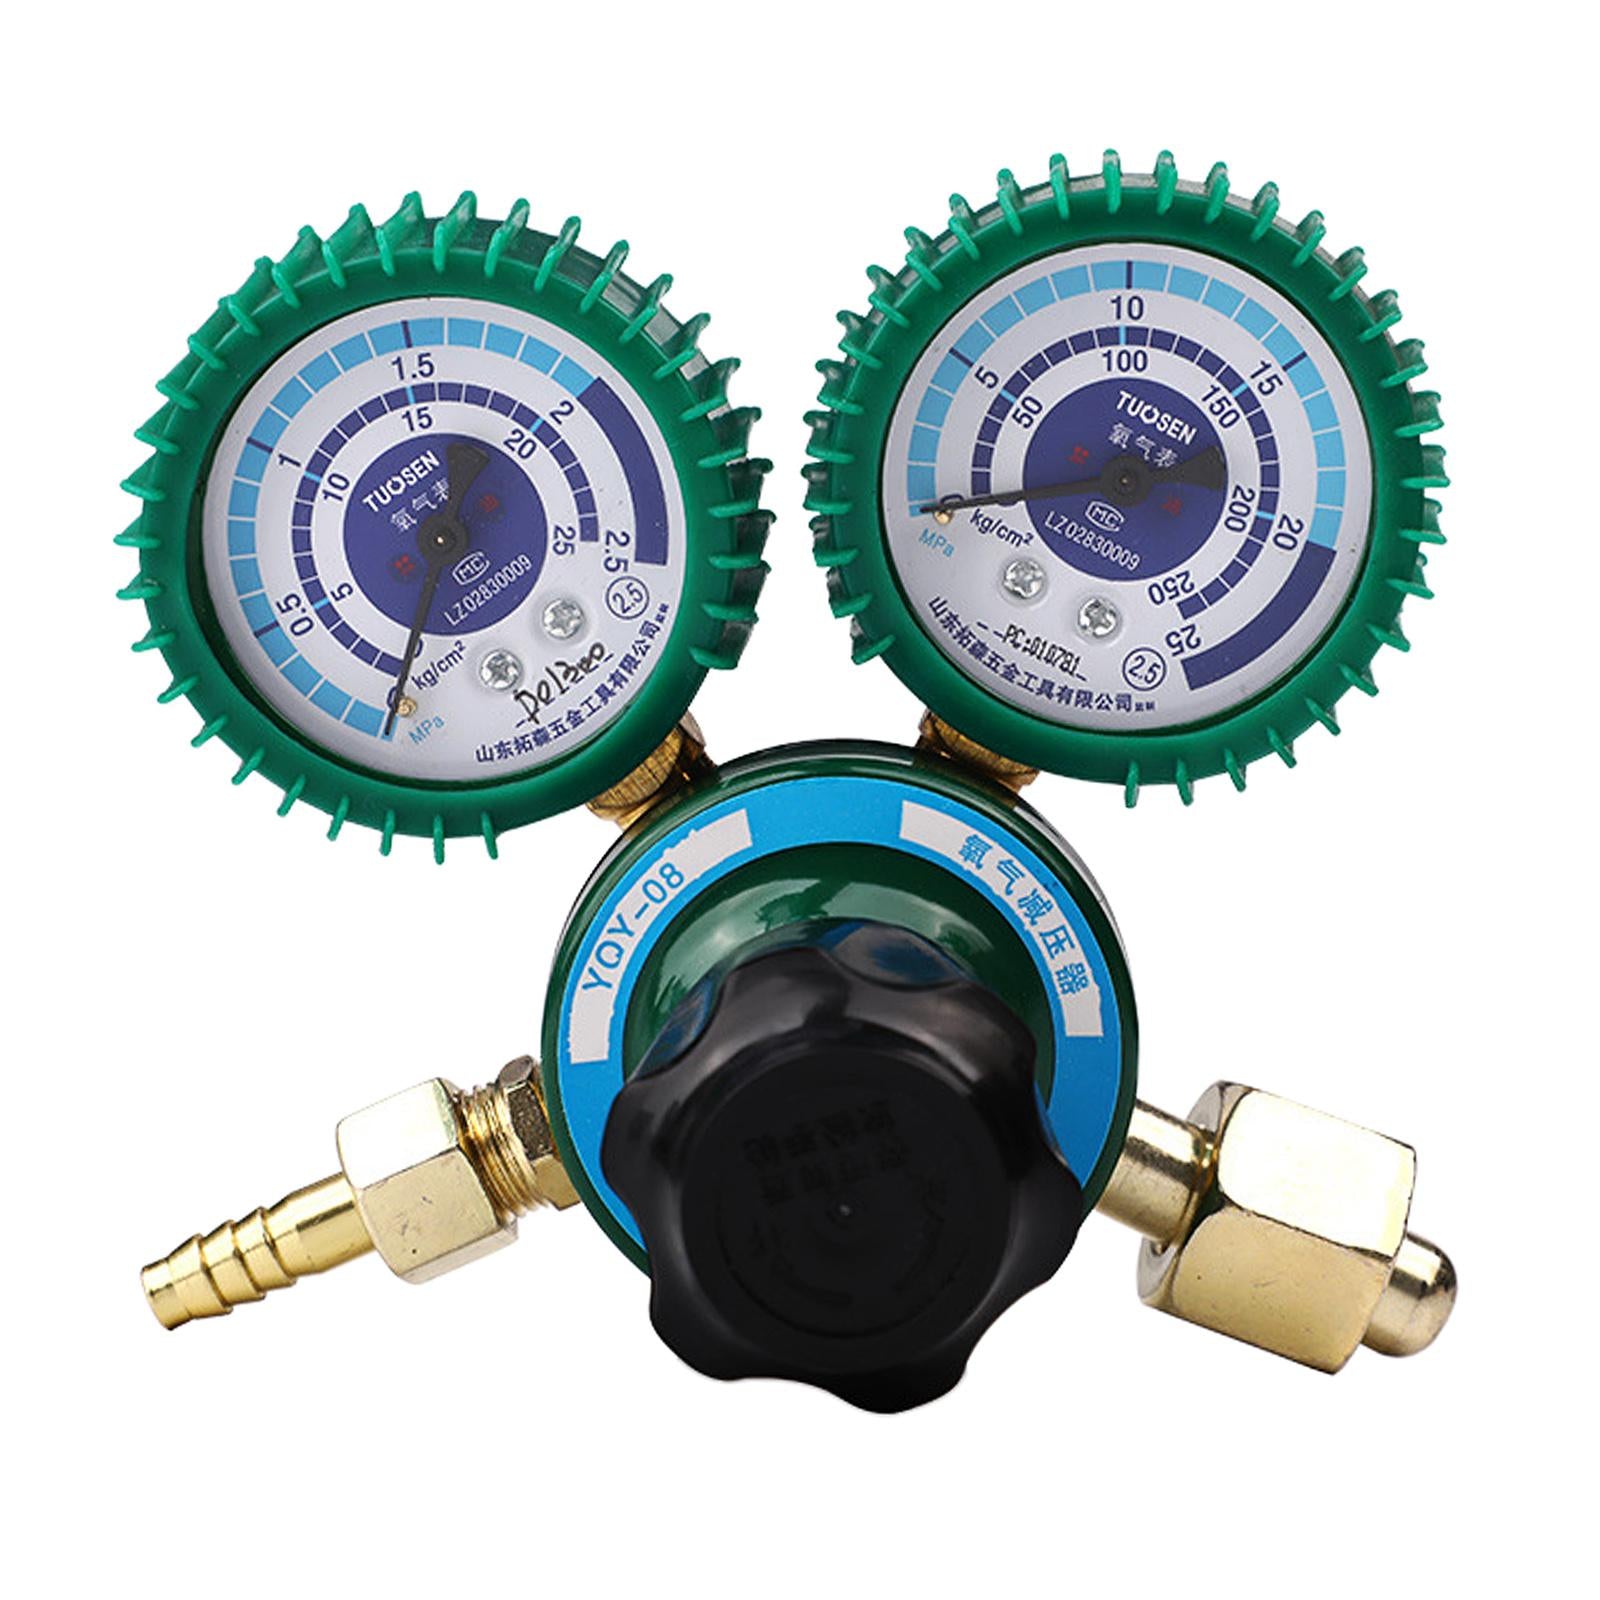 Oxygen Gas Regulator Pressure Reducer Flowmeter Welding Accessories Durable